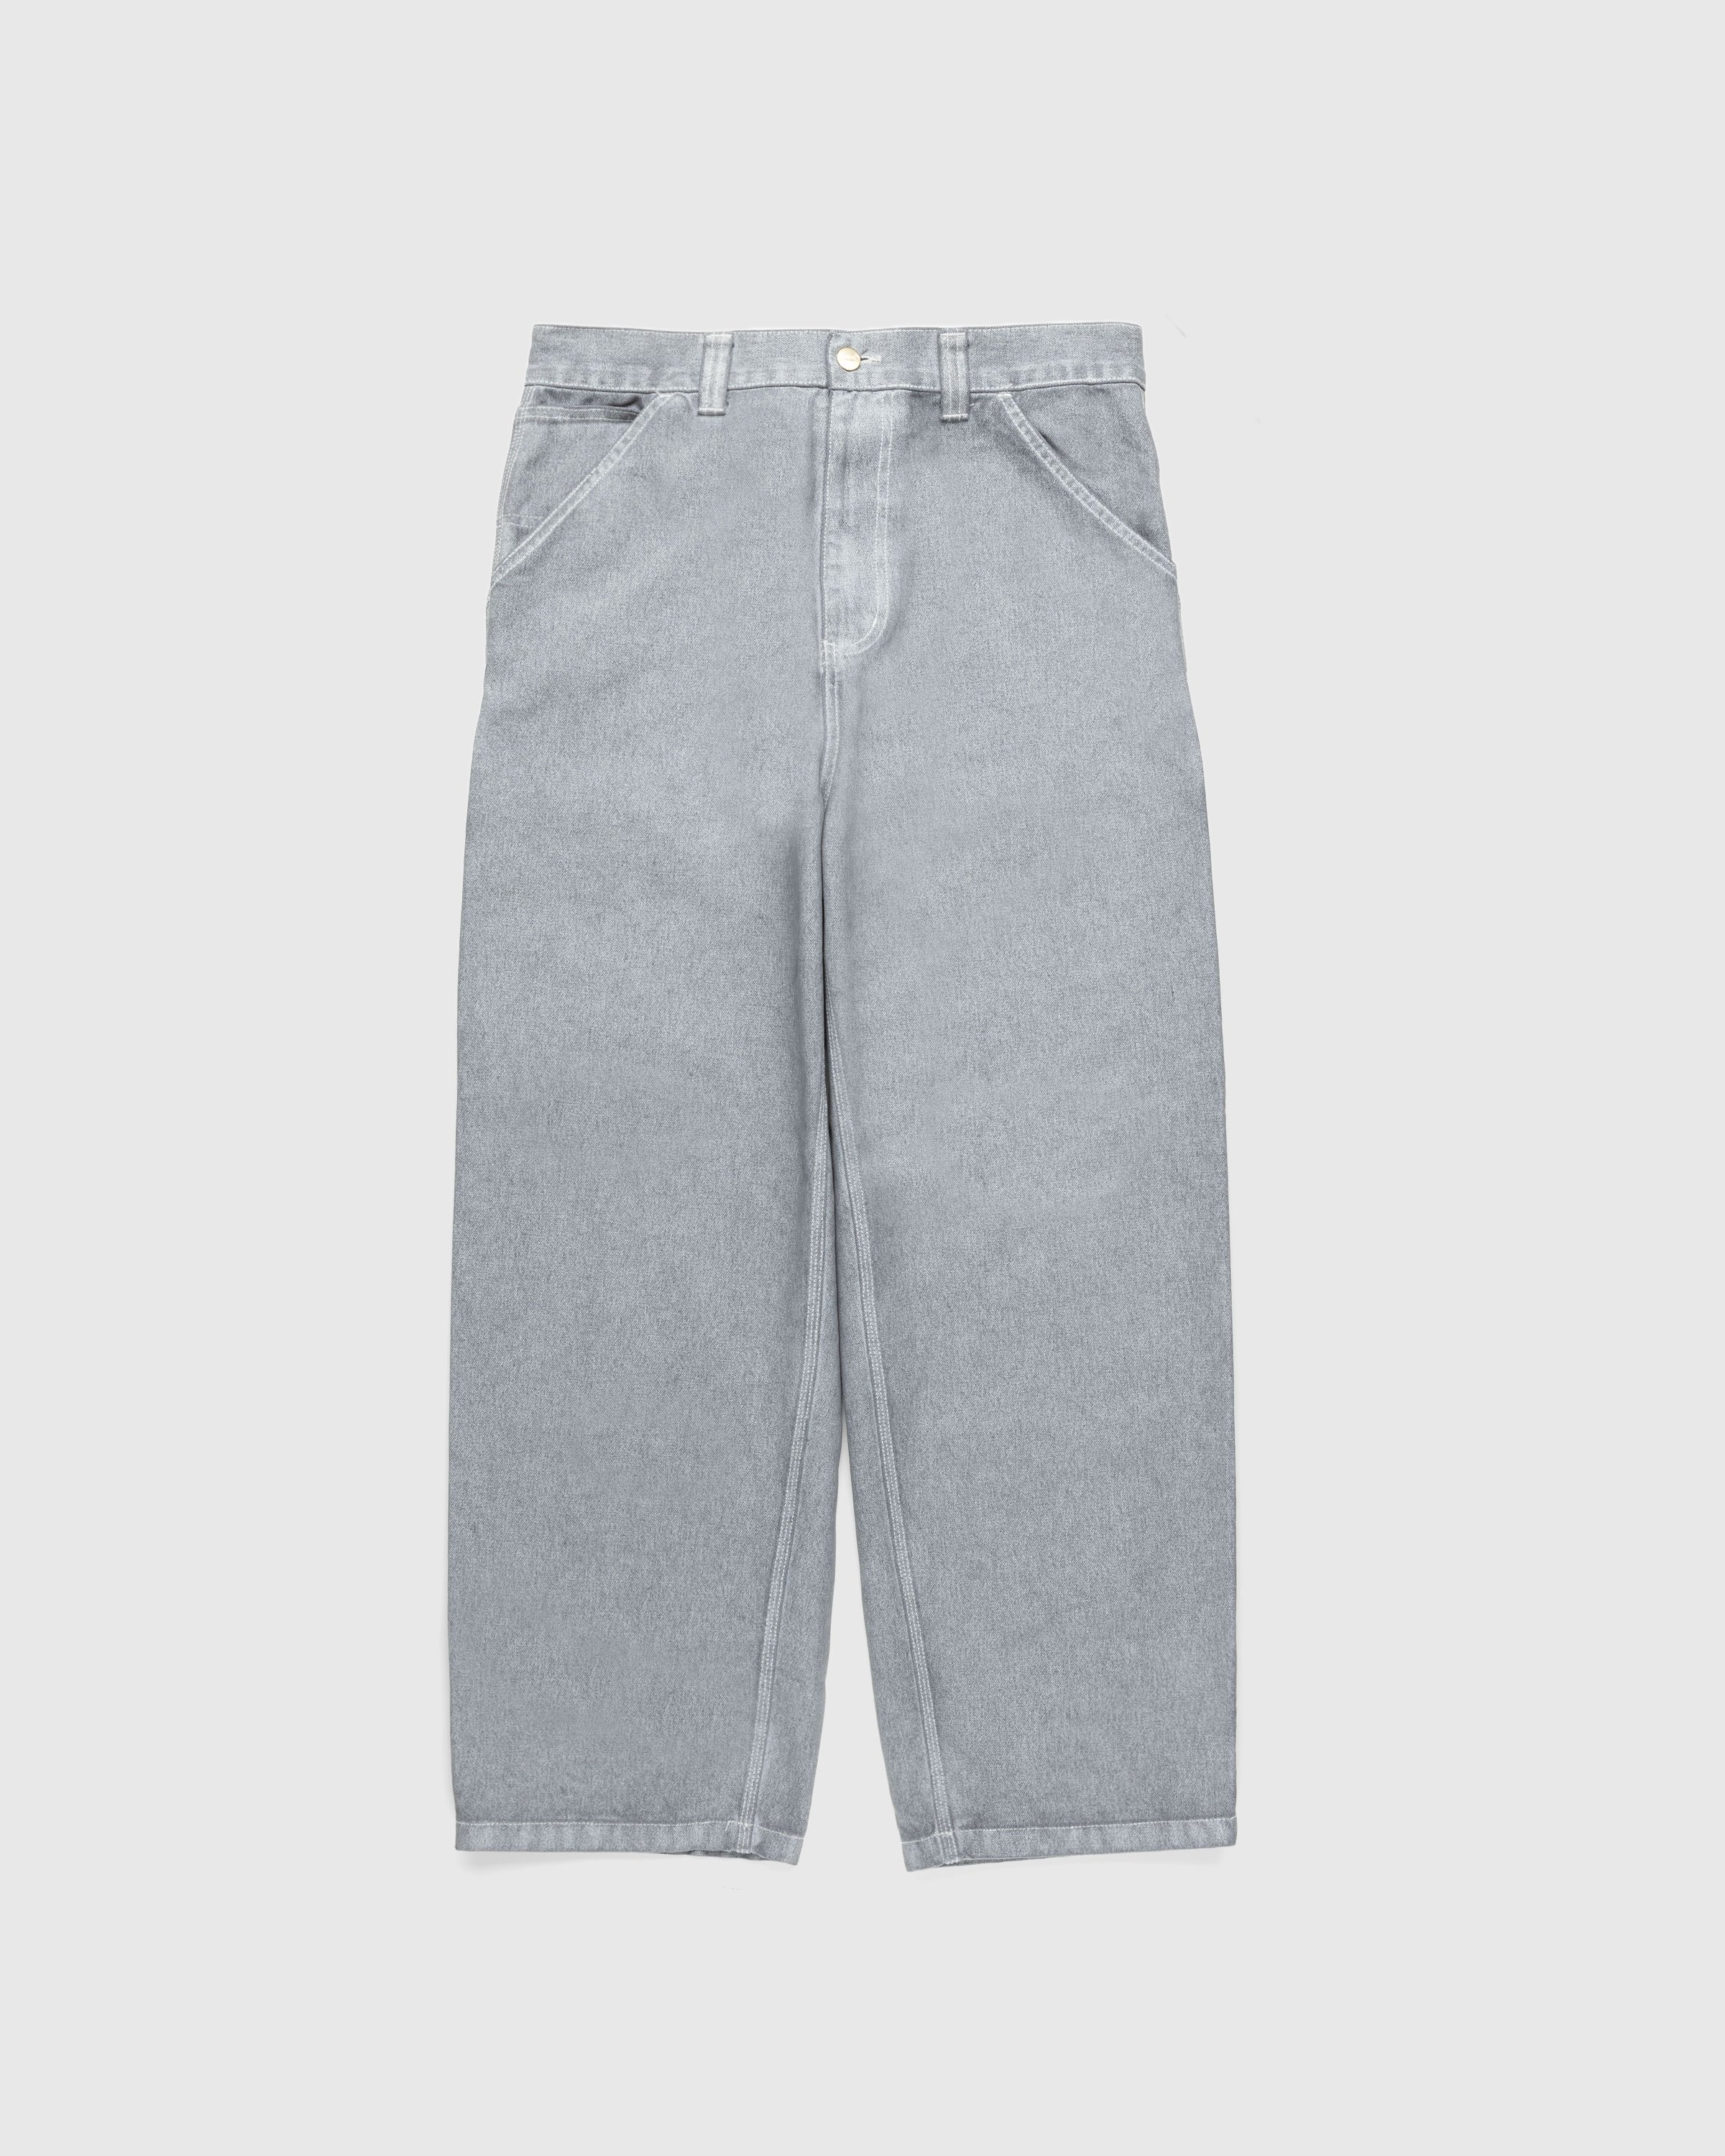 Carhartt WIP - OG Single Knee Pant Wax/Blacksmith/Stone Washed - Clothing - Grey - Image 1